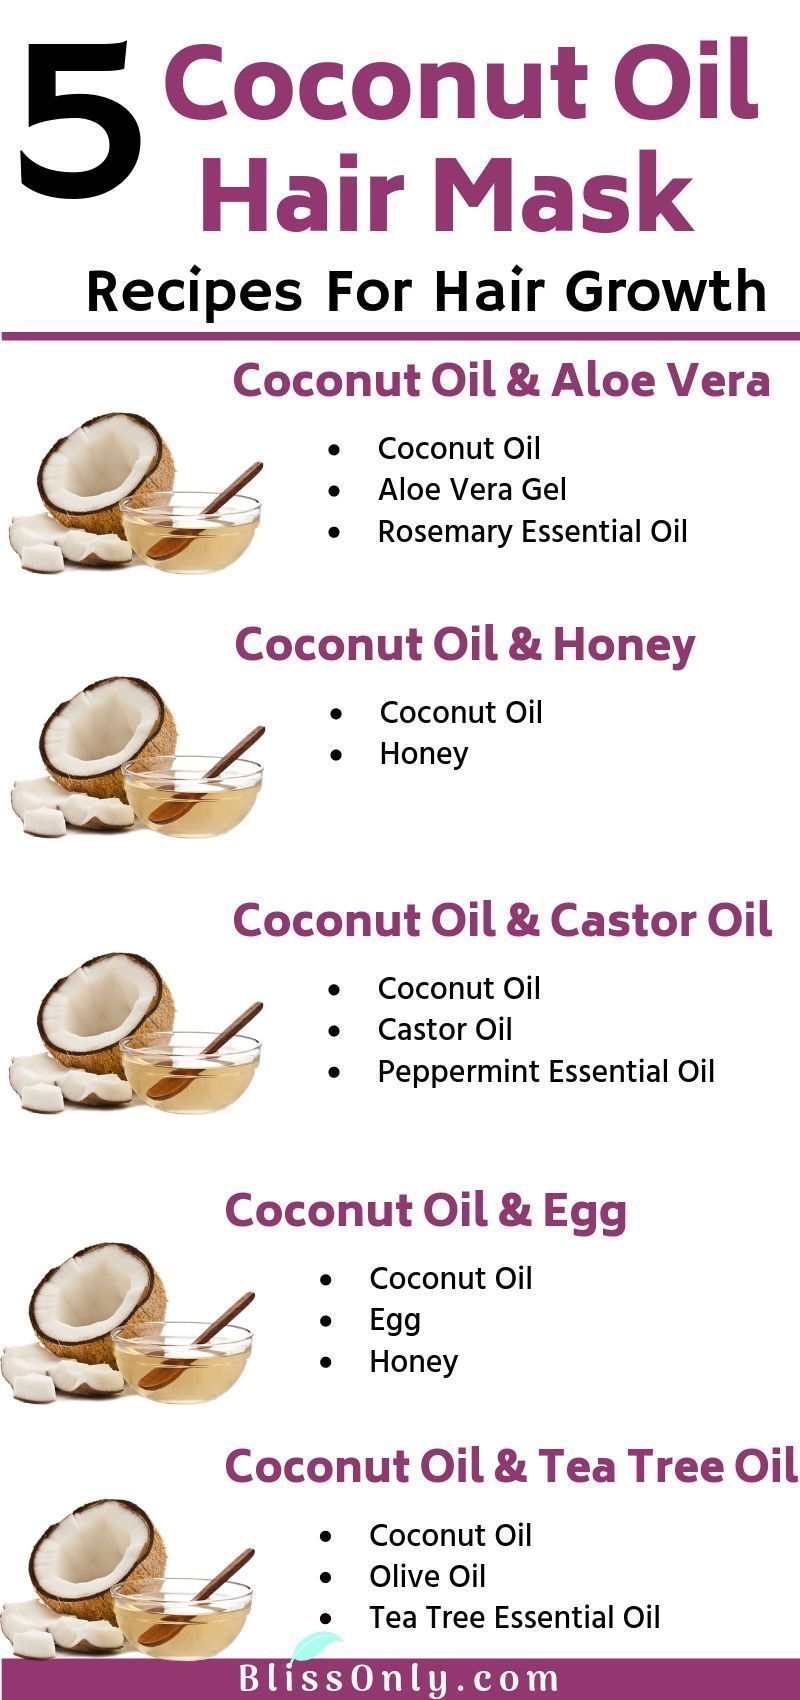 5 Best Coconut Oil Hair Mask For Hair Growth - BlissOnly -   14 healthy hair DIY ideas